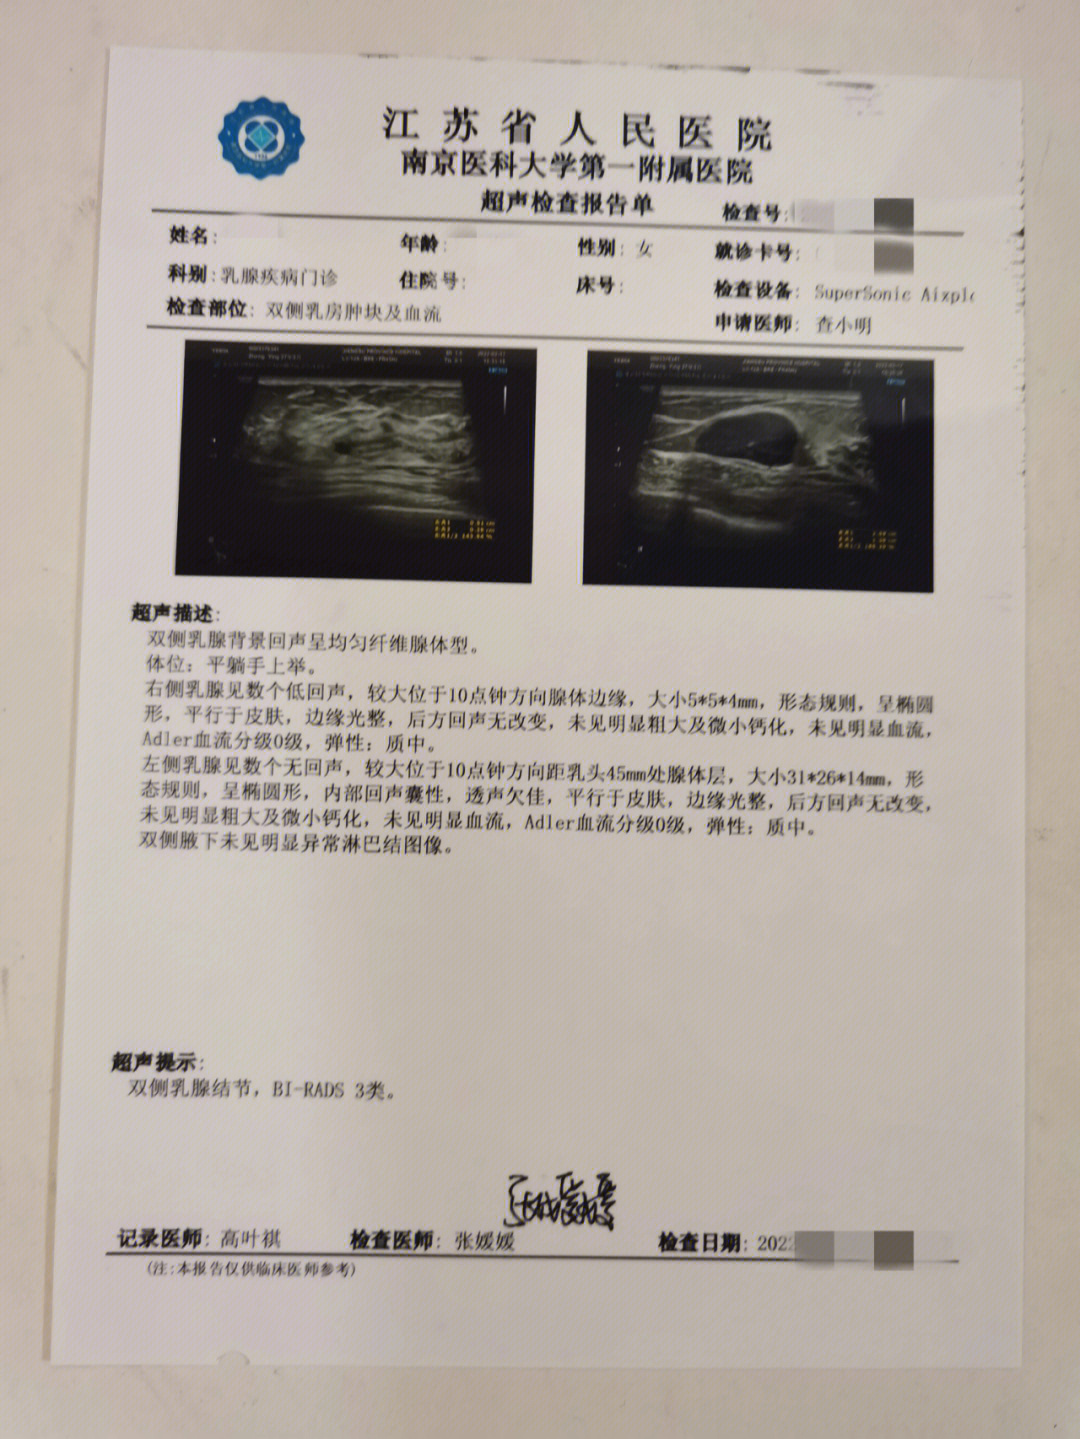 乳腺手术铺单示意图图片